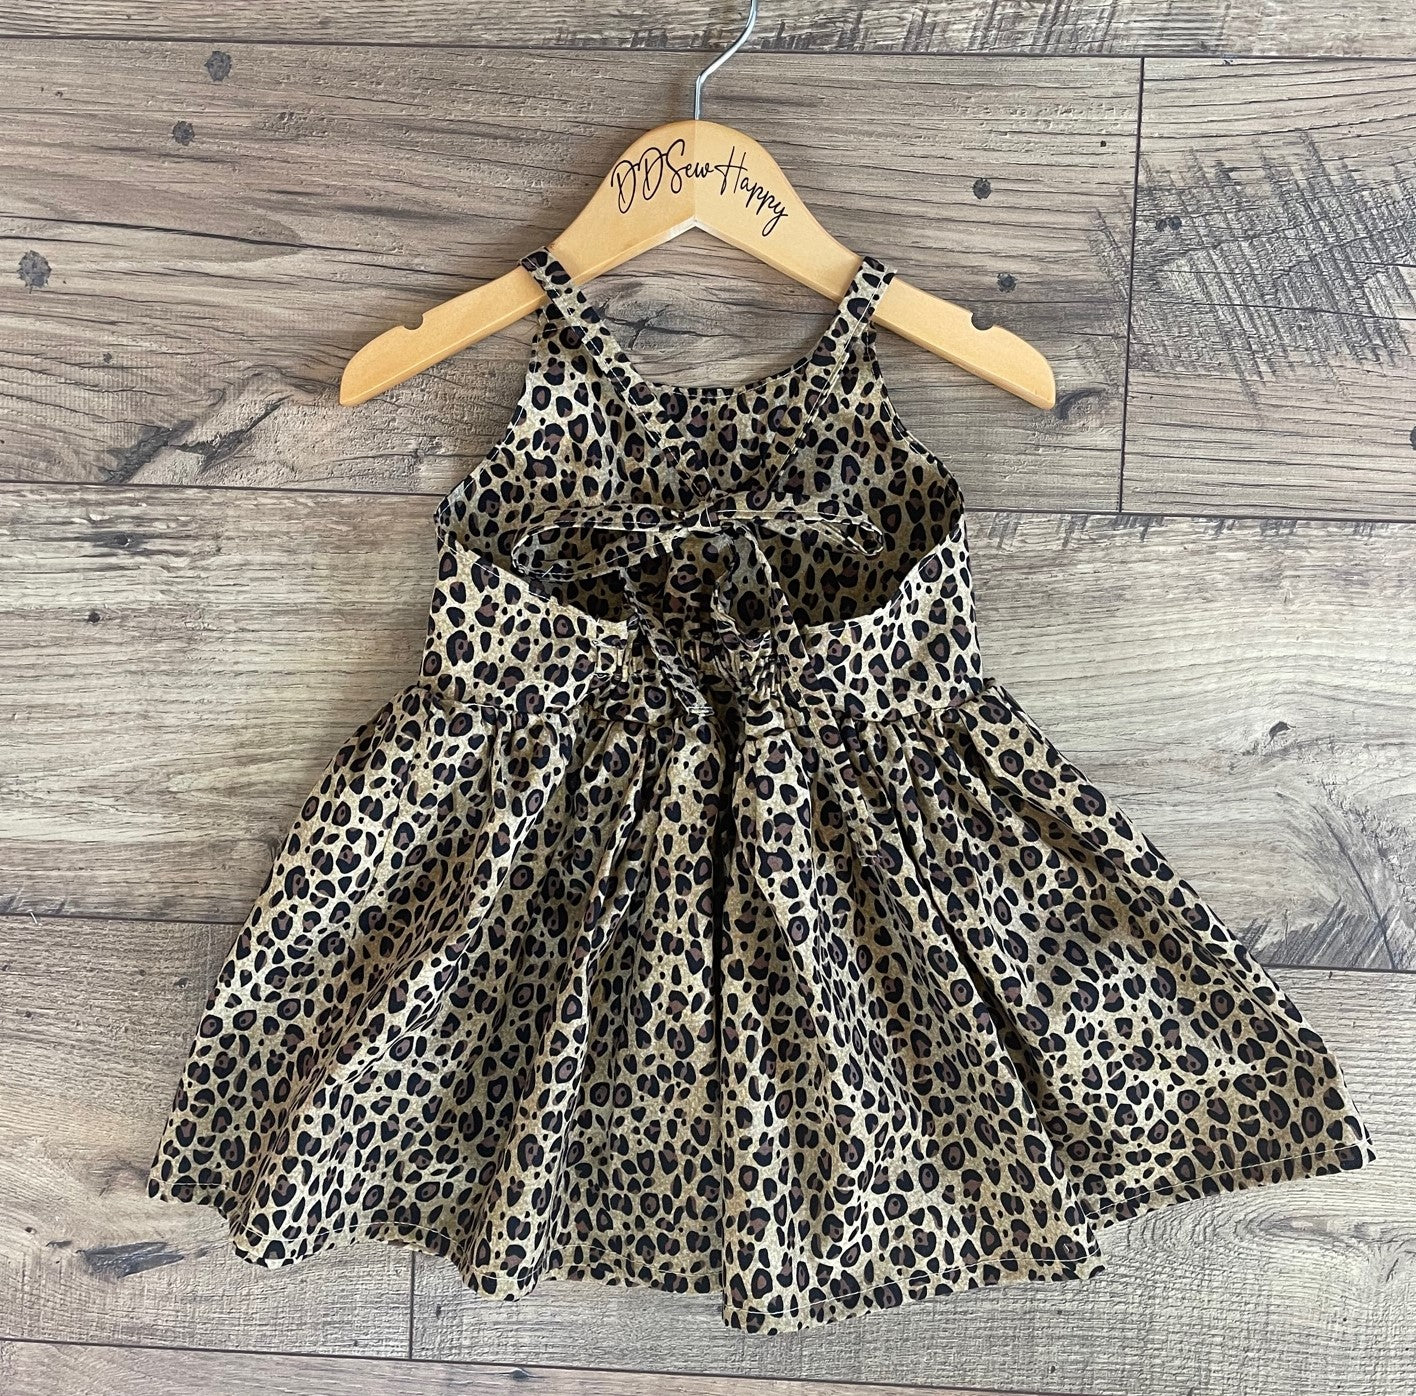 Girls Infant Toddler Leopard Cheetah Animal Skin Boho Sundress Twirl Dress tie back style